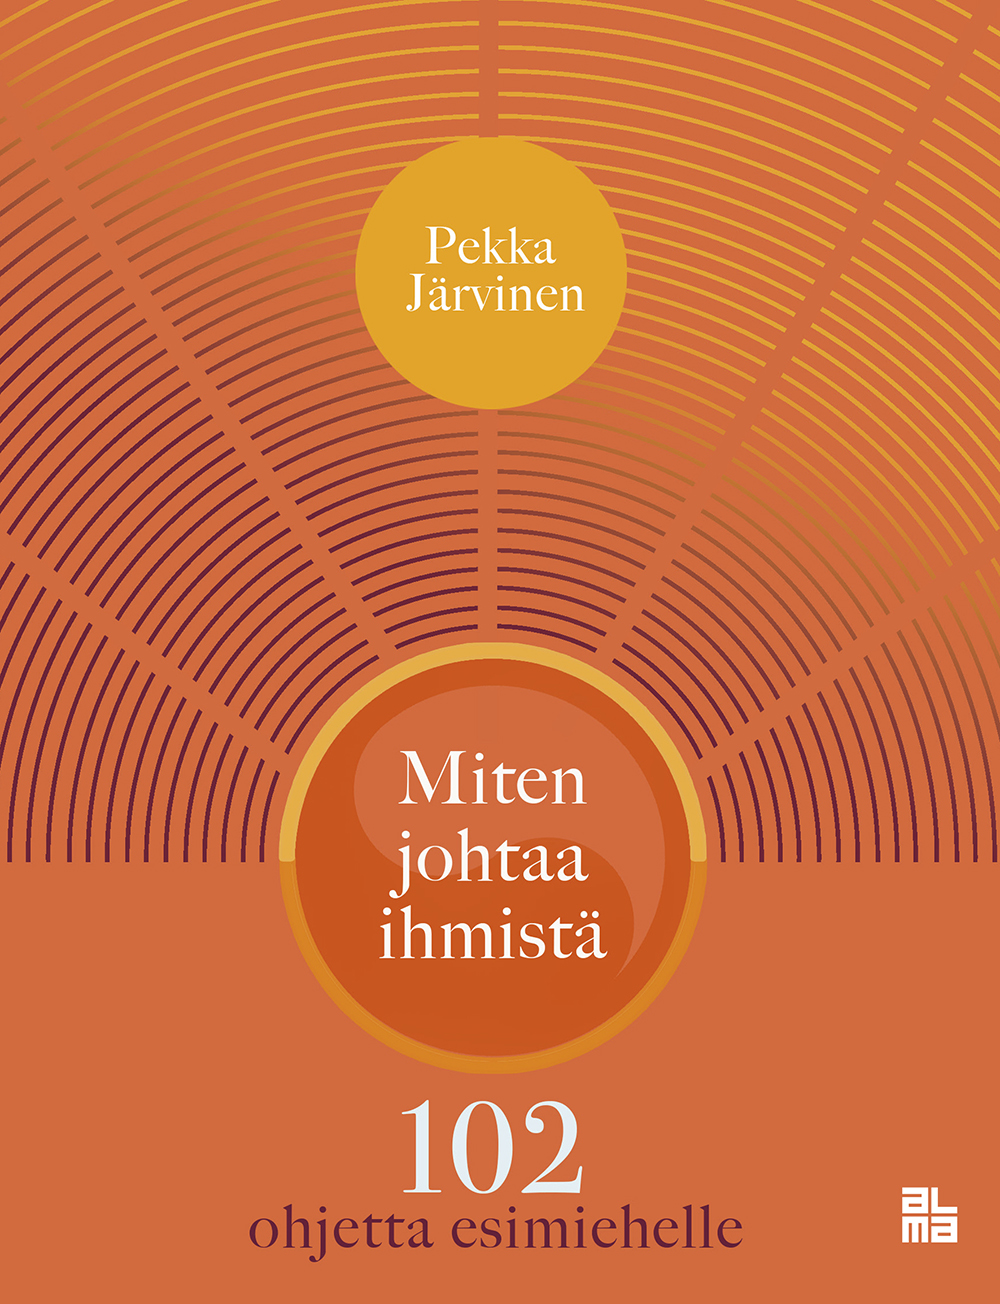 Järvinen, Pekka - Miten johtaa ihmistä, ebook